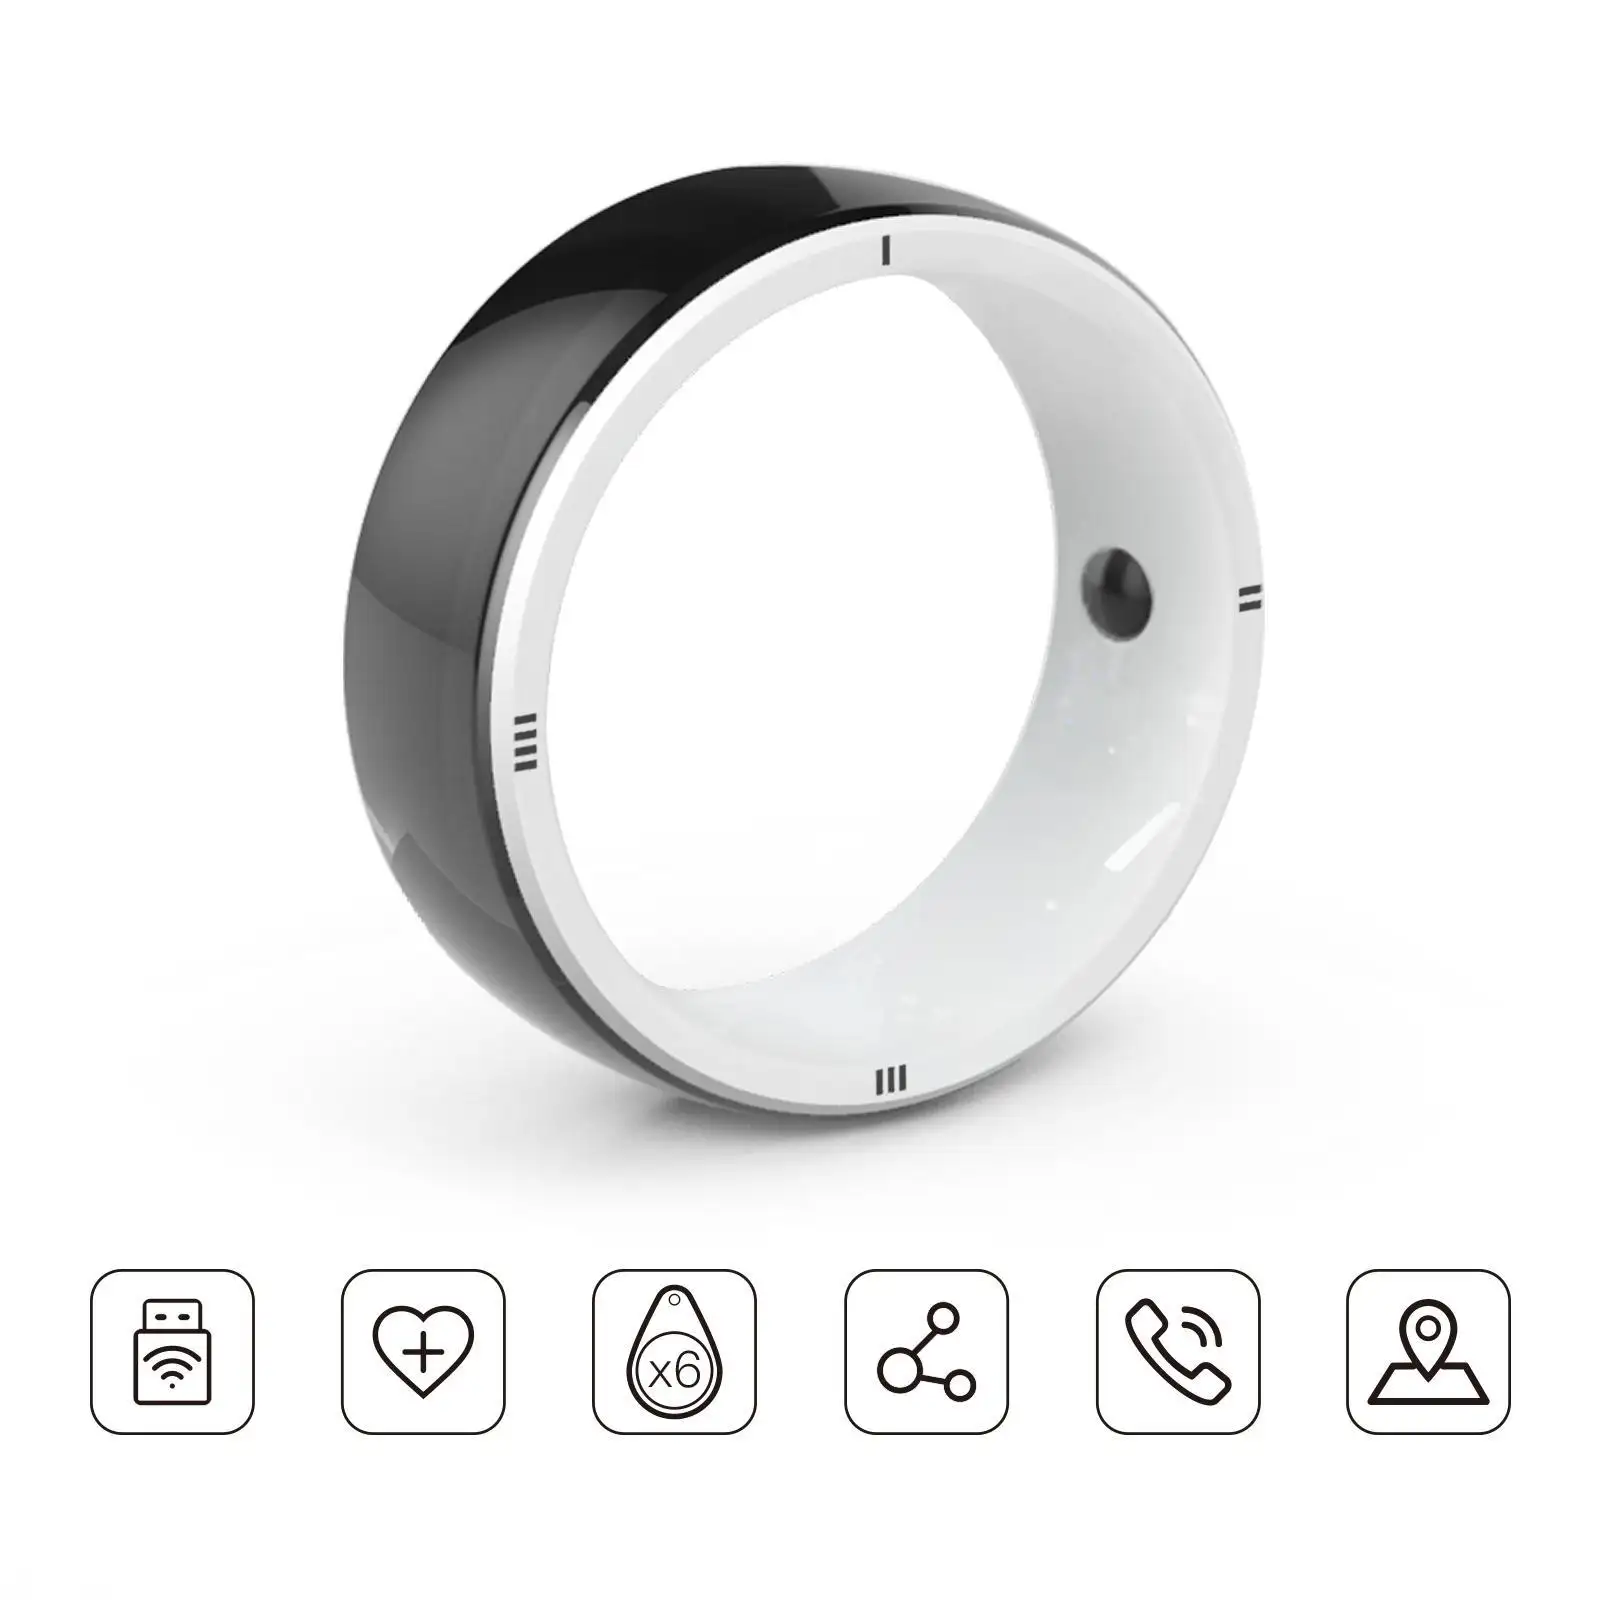 خاتم JAKCOM R5 الذكي خاتم ذكي منتج جديد للألعاب اللوحية بنظام android تحميل قطع غيار الهاتف المحمول عبر الإنترنت حامل المروحة المرنة للهواتف المحمولة